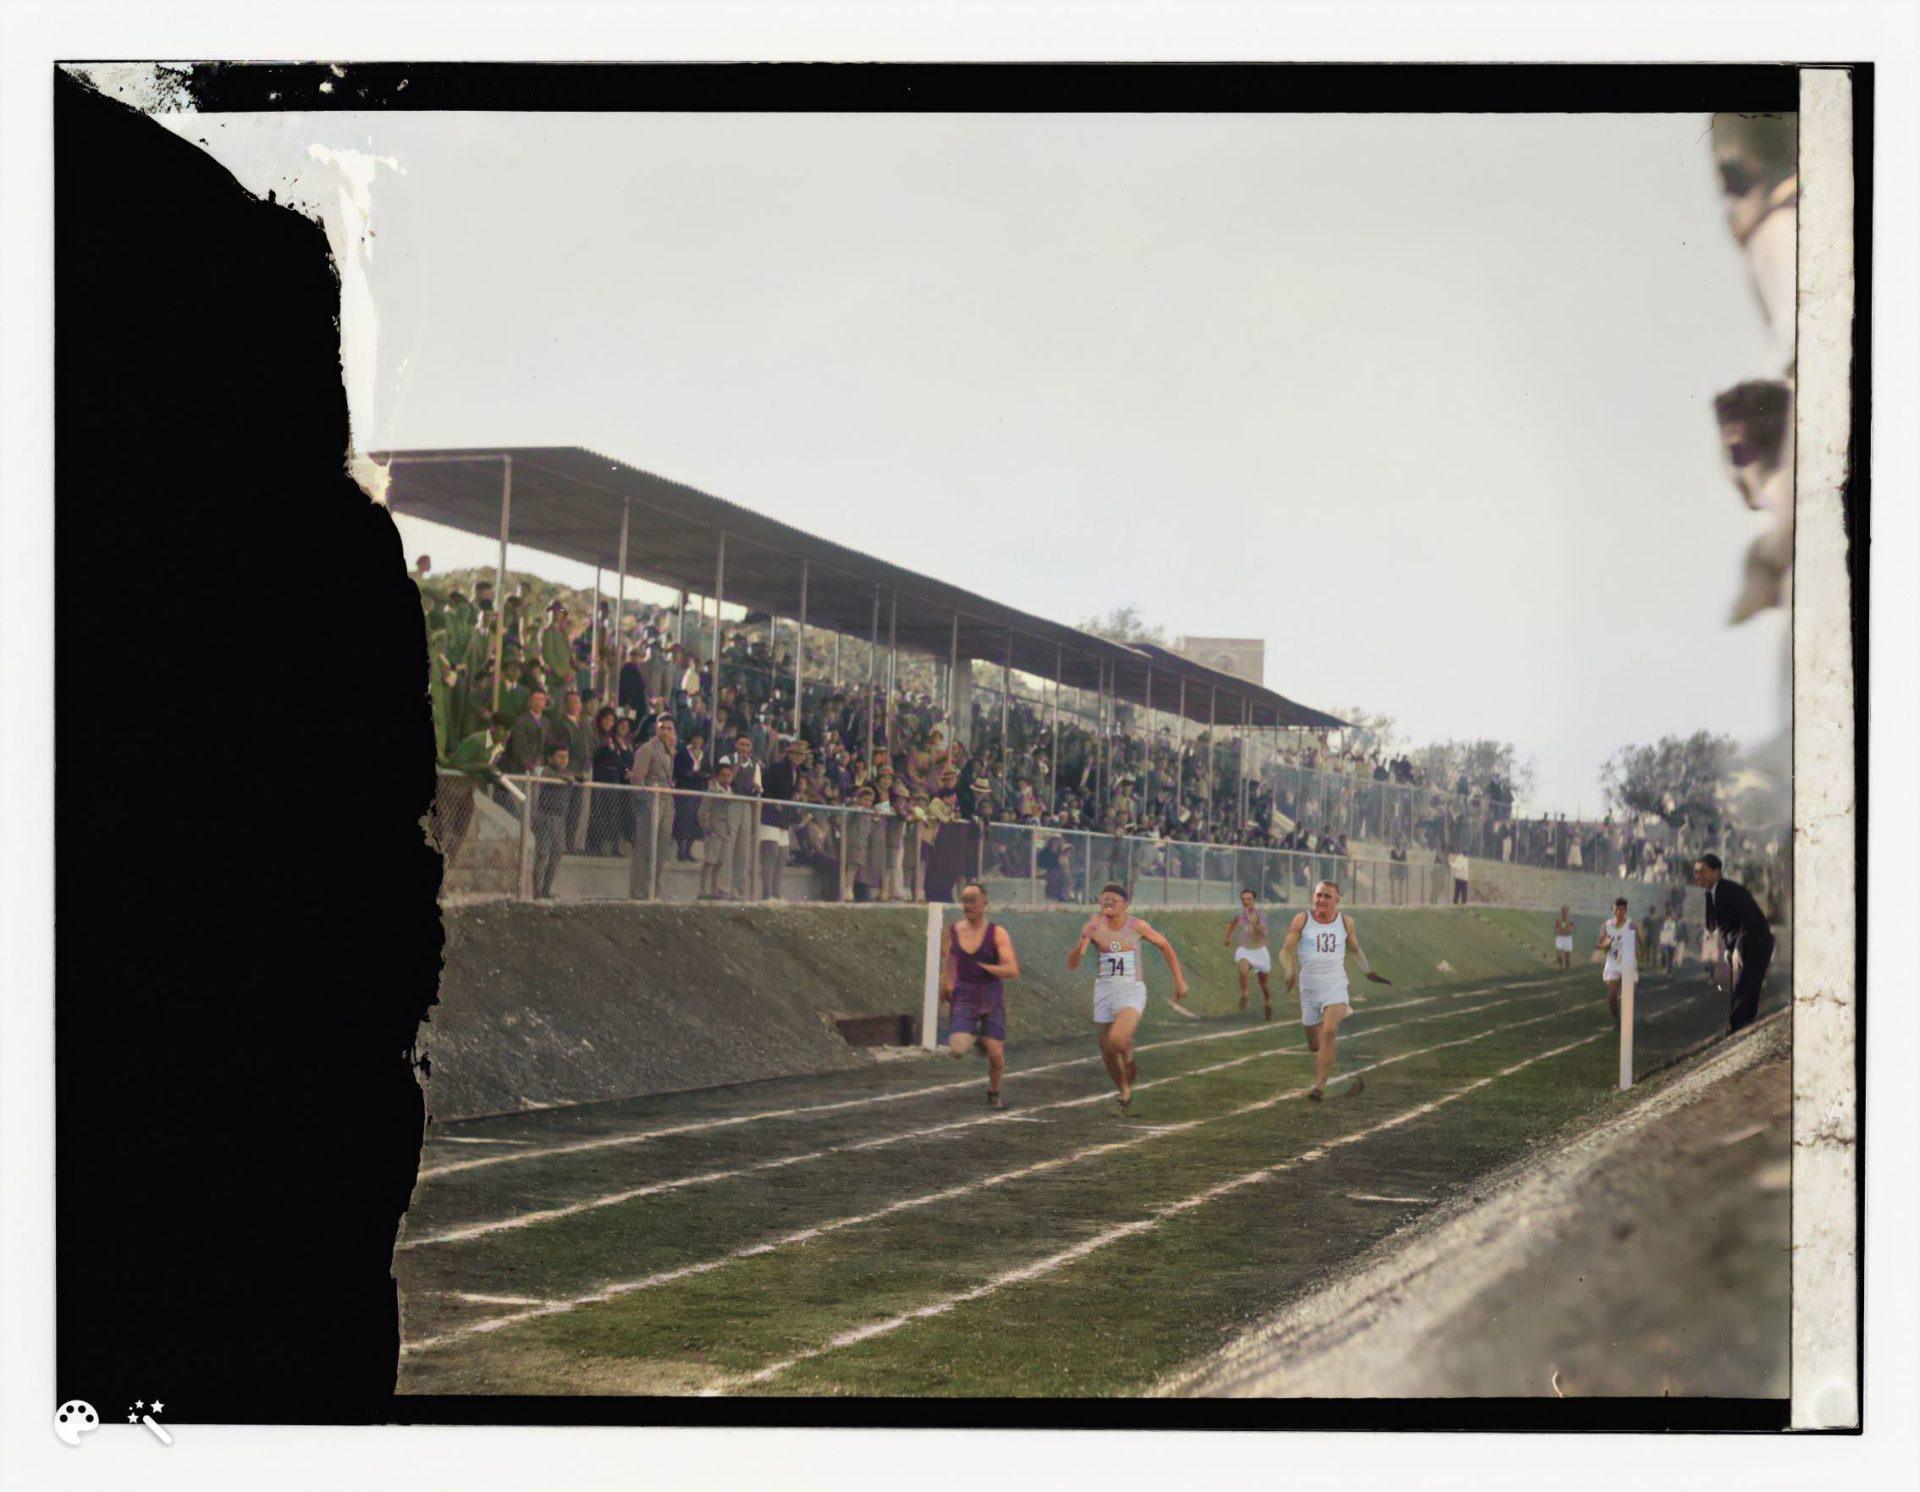 תחרויות אתלטיקה של ימק"א, אמצע שנות ה-30'. מספר תמונה: LC-DIG-matpc-13767